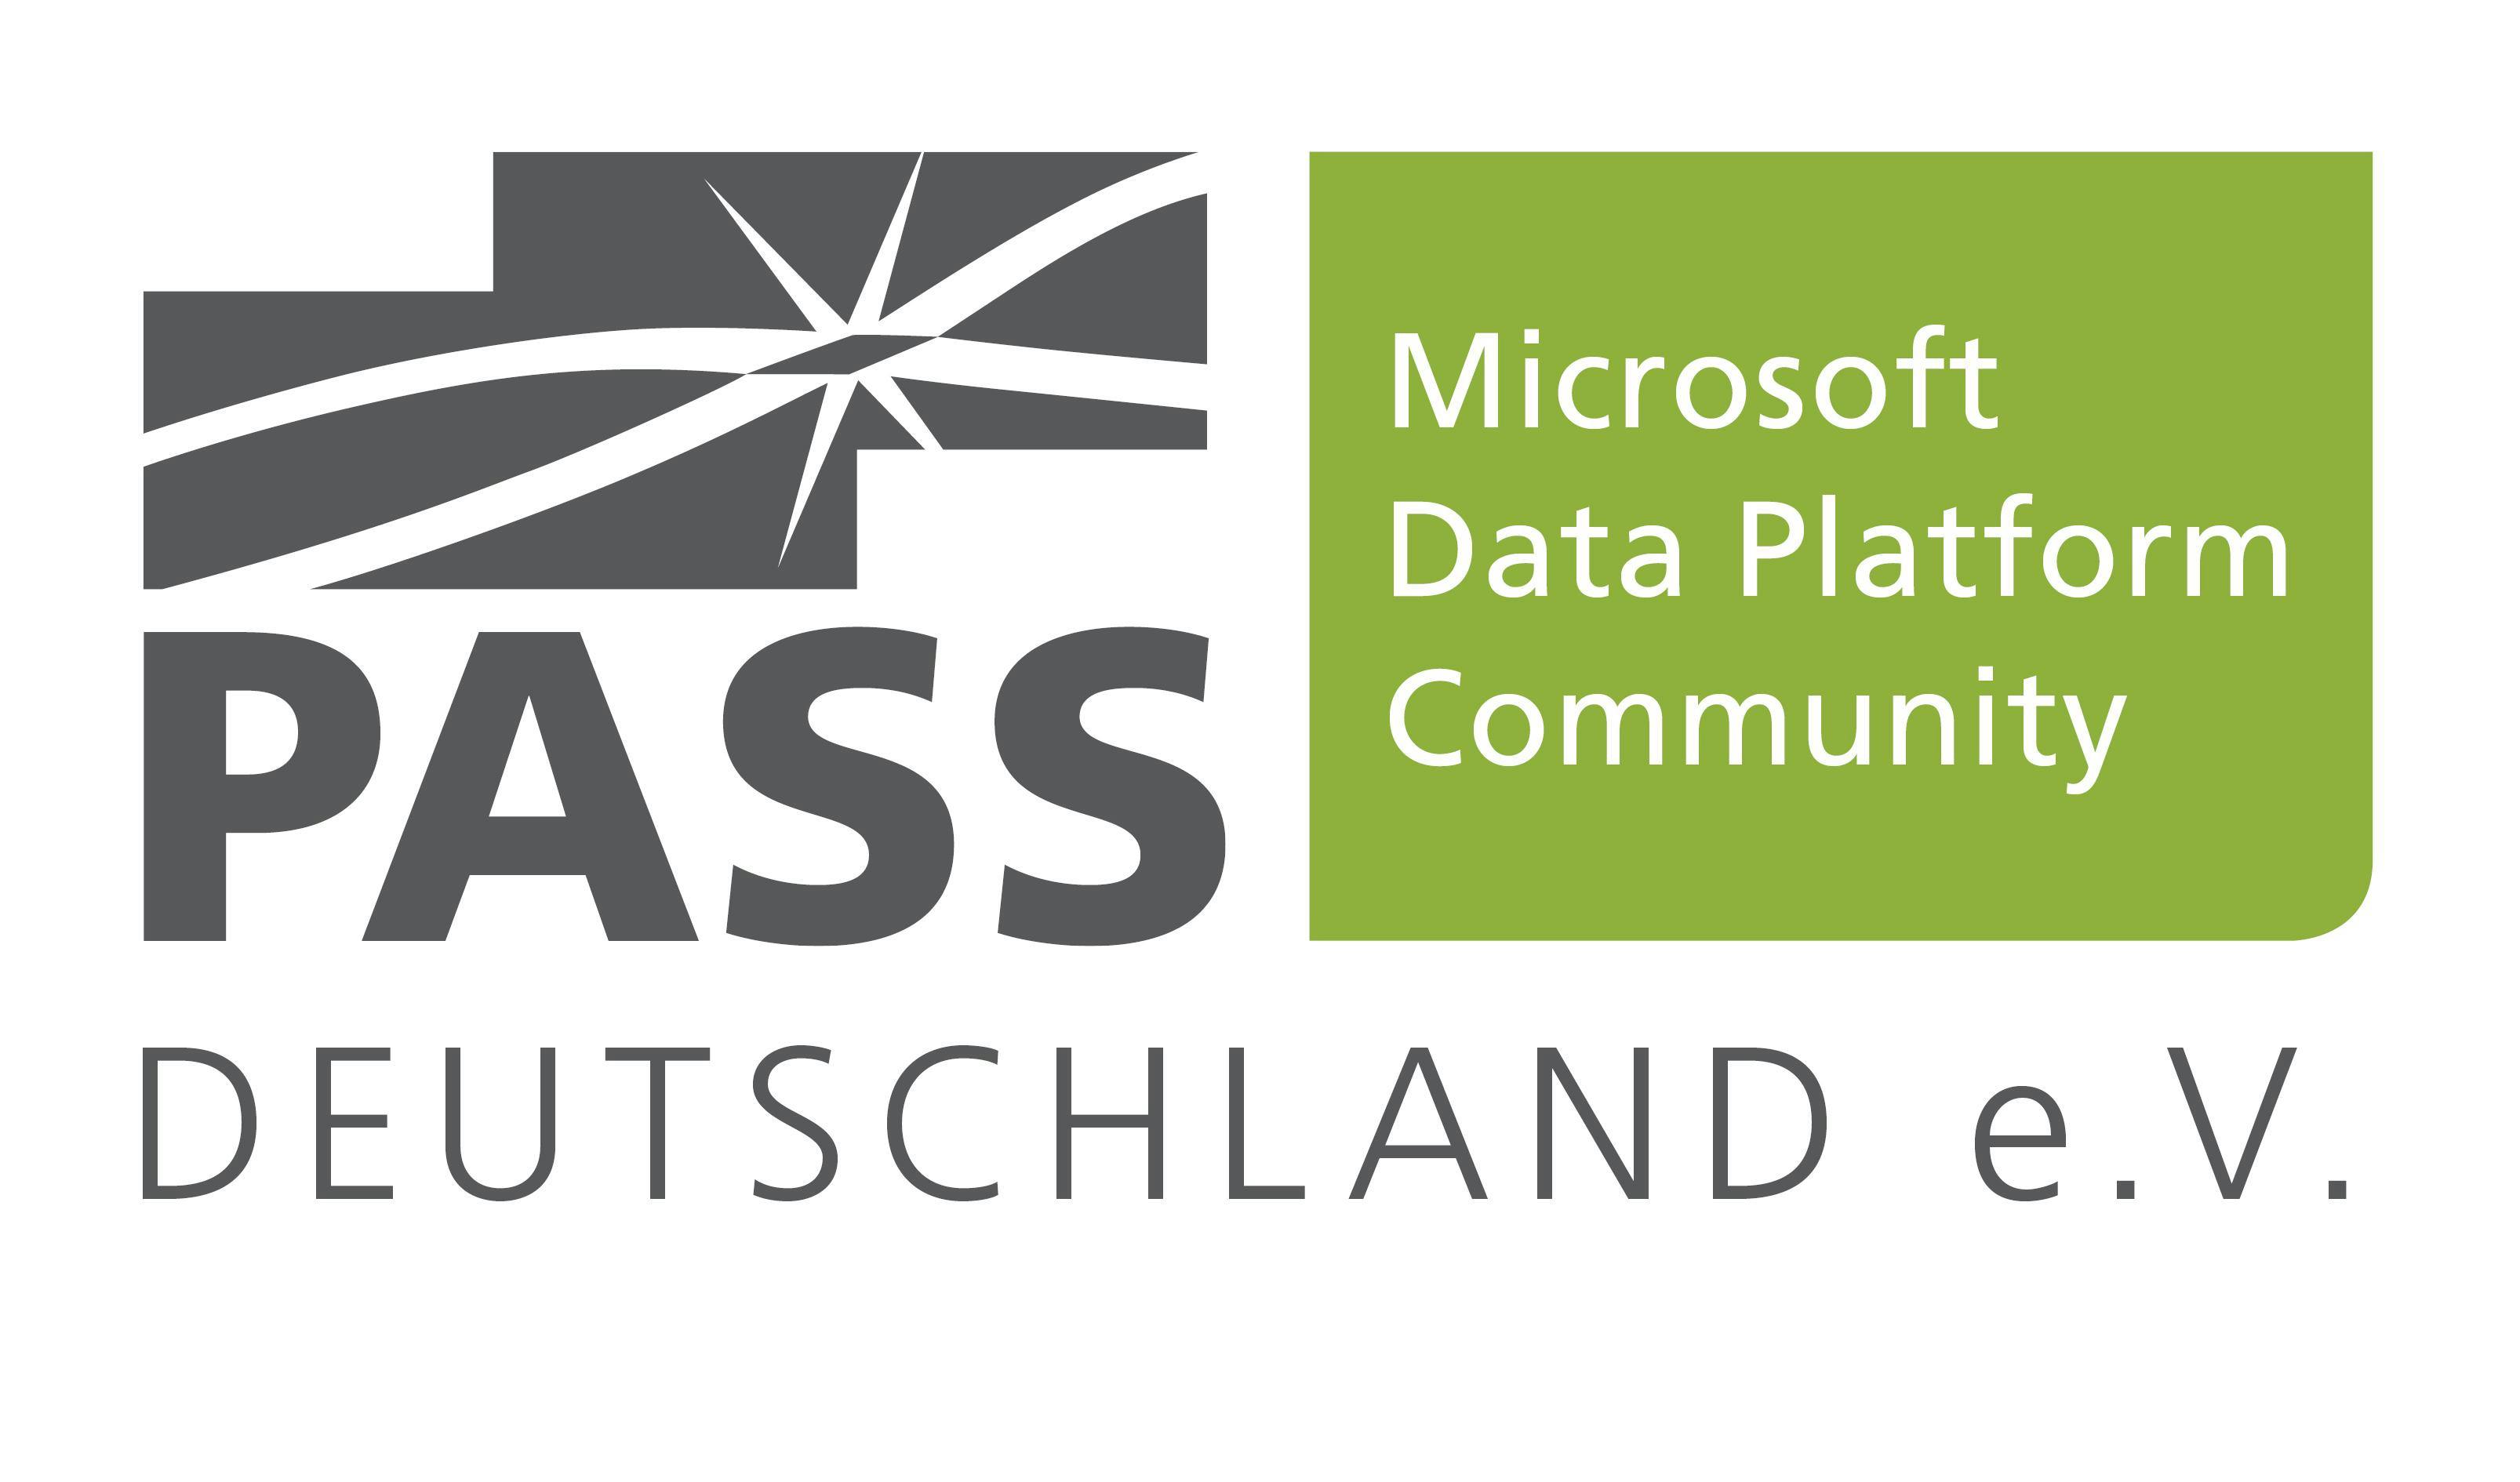 PASS Essential Datenschutz mit SQL Server, 12.11.2019 